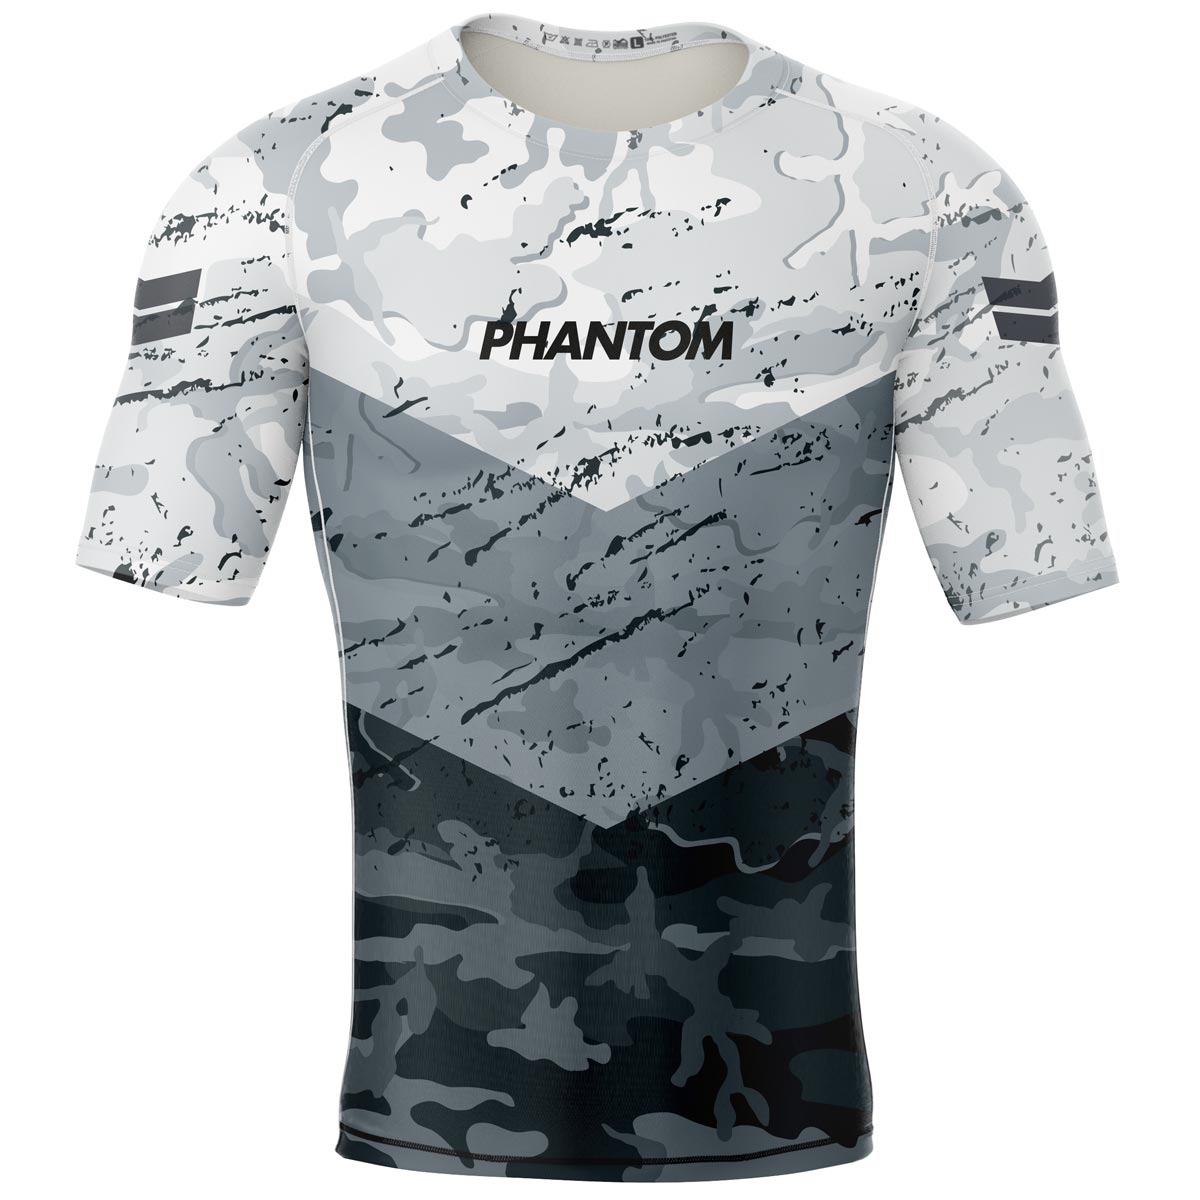 Phantom Rashguard para tus artes marciales. Camiseta de compresión ajustada para MMA, BJJ, lucha libre, Muay Thai y otros deportes de lucha.